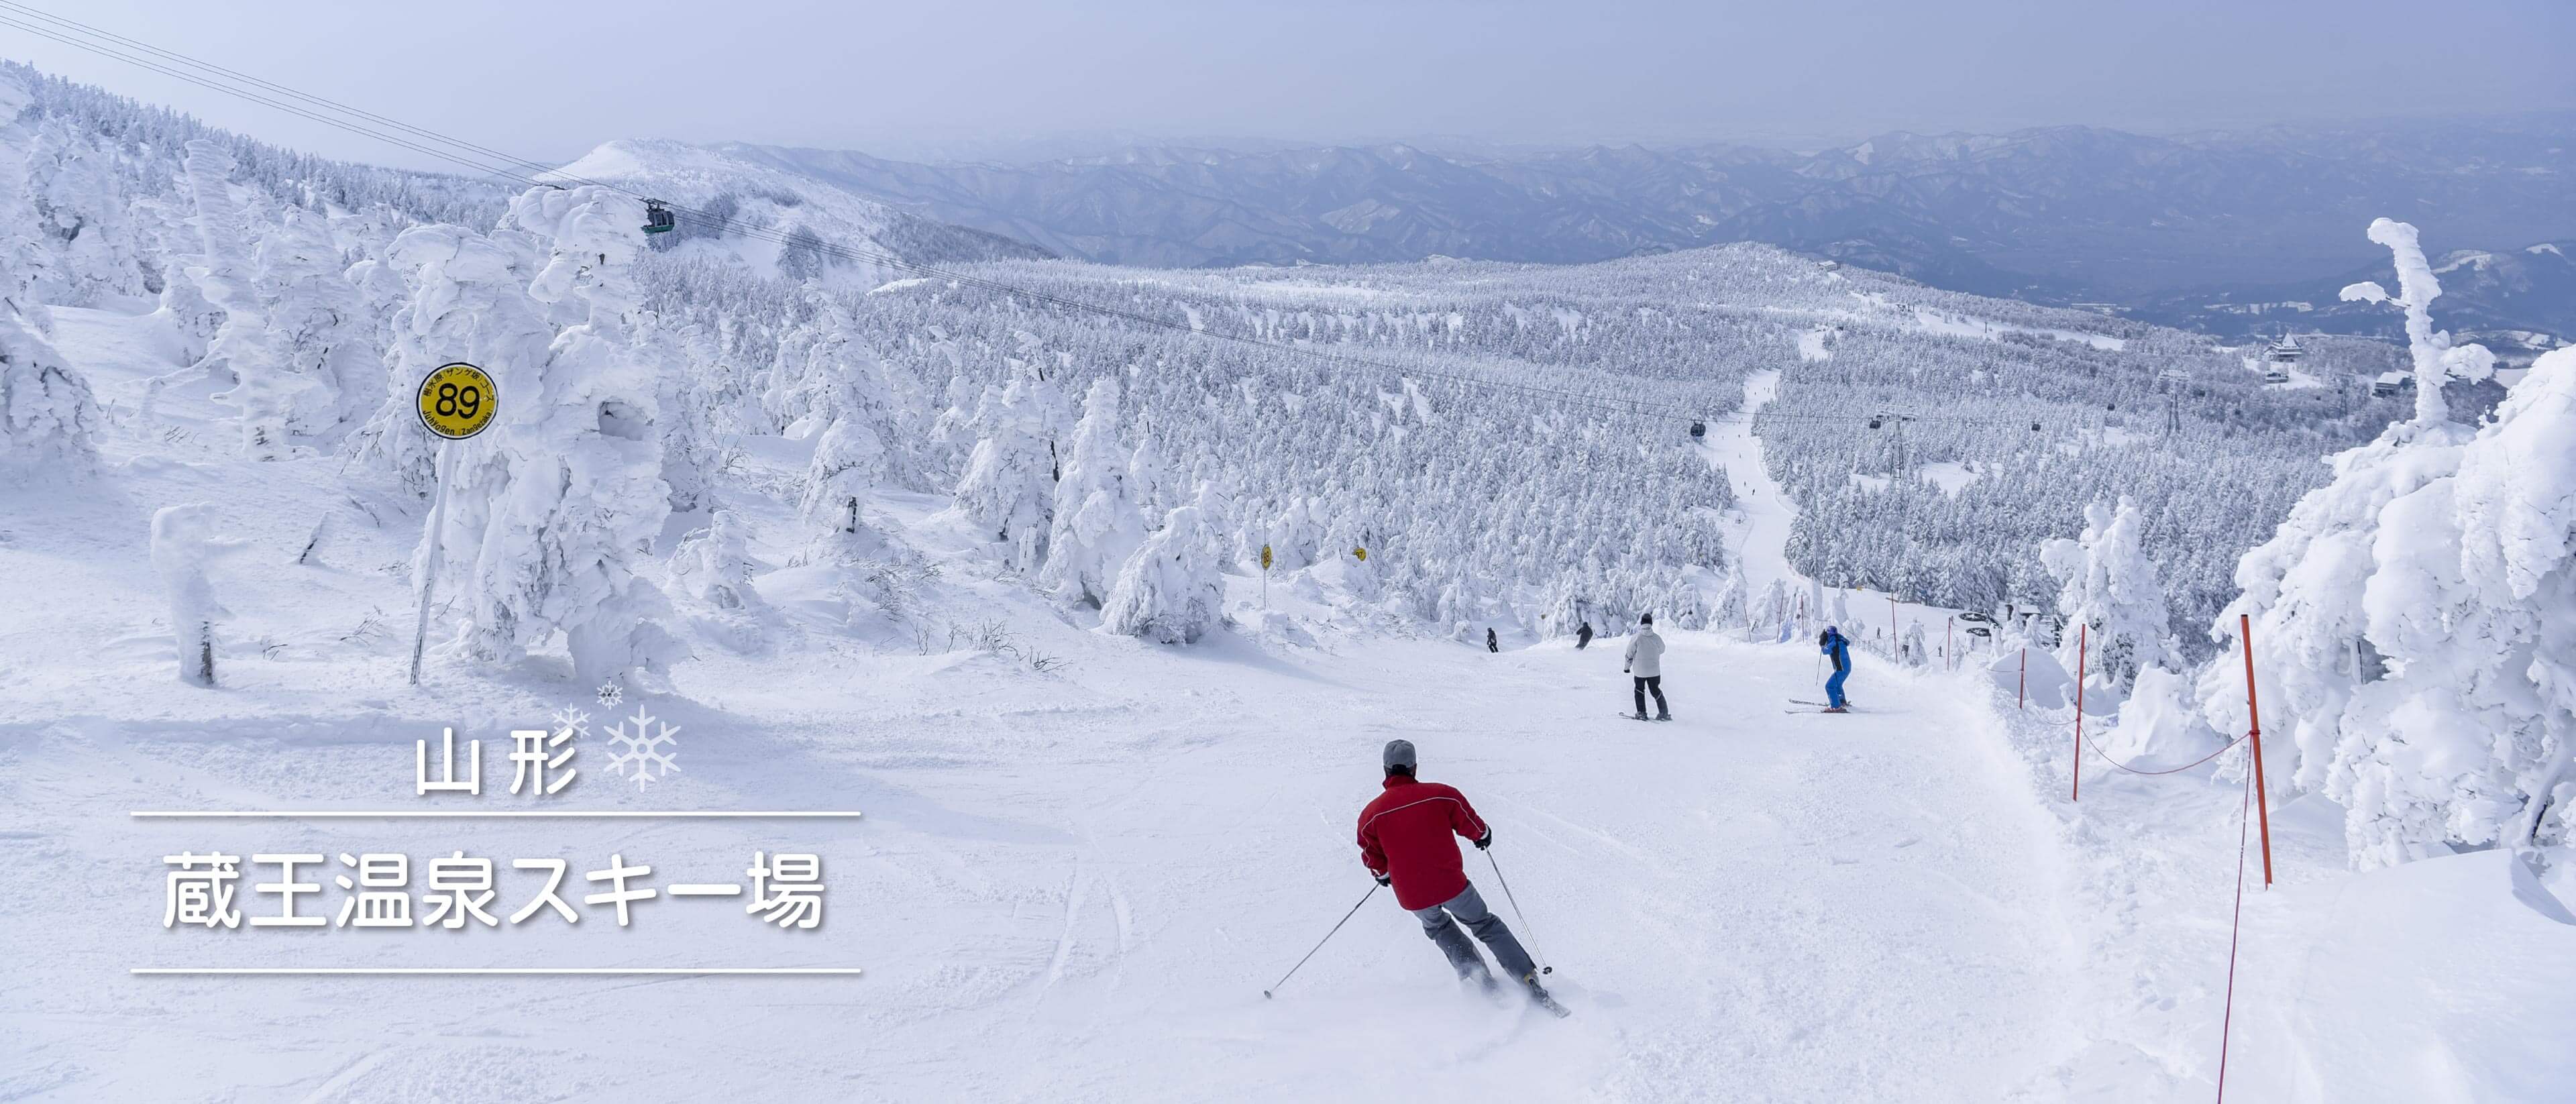 蔵王温泉スキー場 スキー スノーボードツアー フジドリームエアラインズ Fda